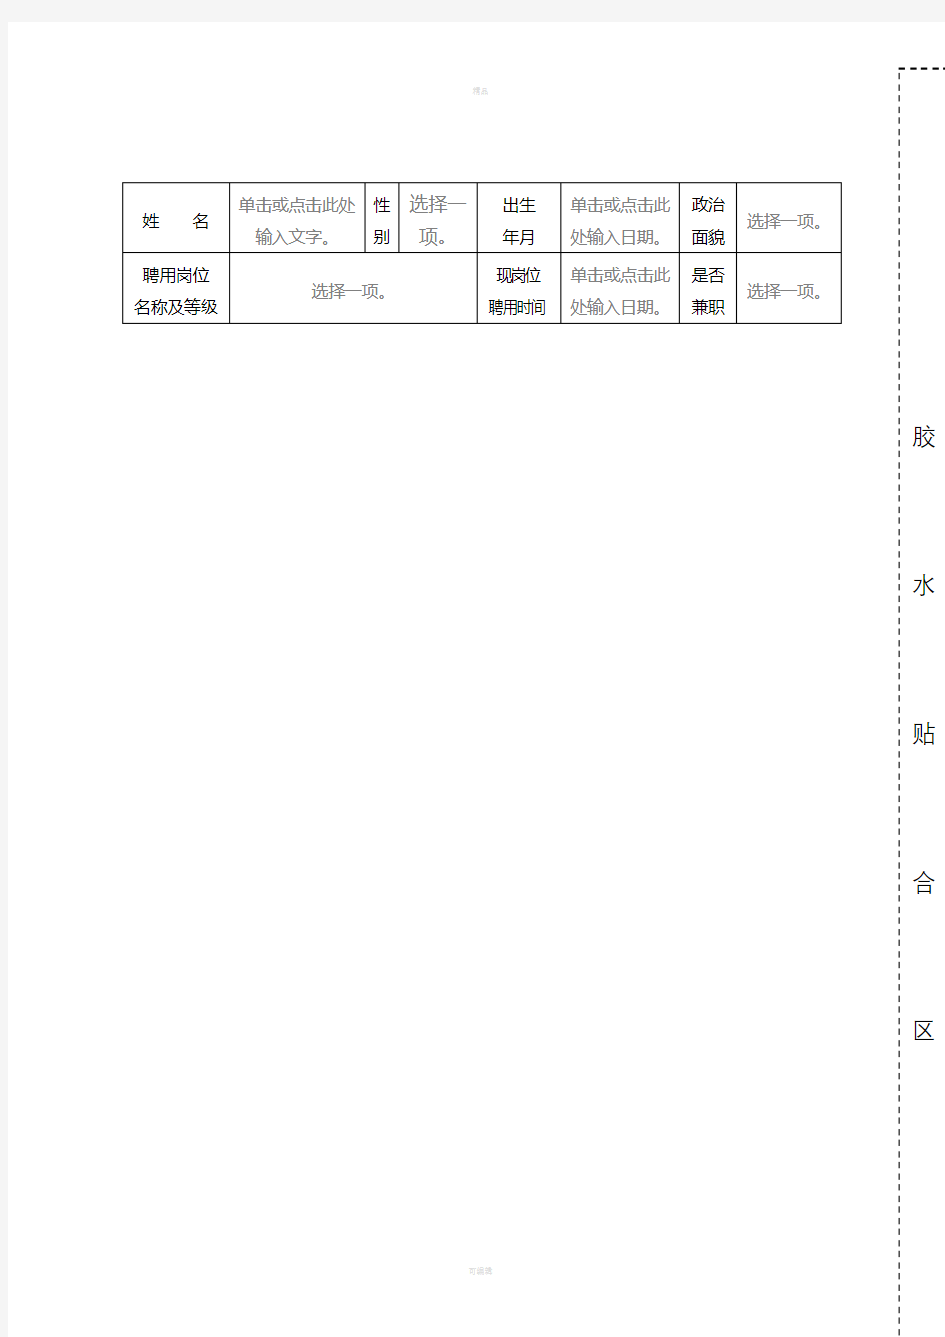 山东省事业单位工作人员年度考核表(2017新版)